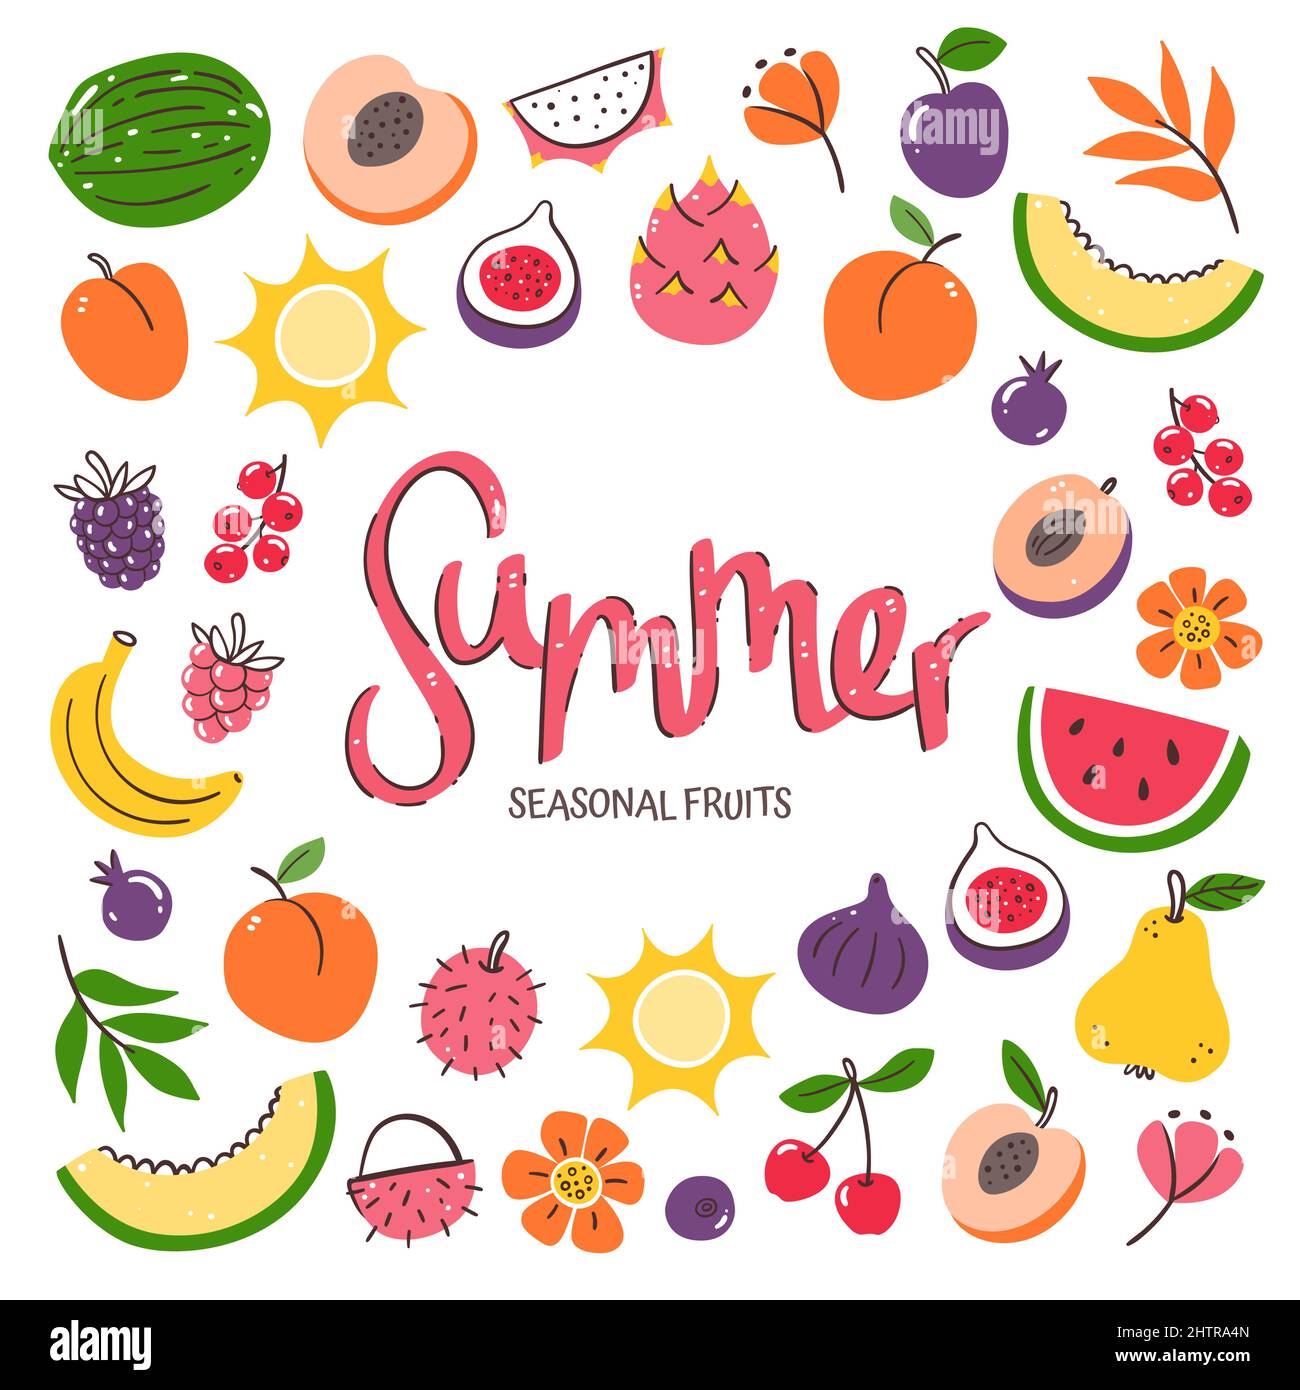 Saisonale Früchte Hintergrund. Sommerliche Fruchtkomposition aus bunten, handgezeichneten Vektor-Icons, isoliert auf weißem Hintergrund. Stock Vektor